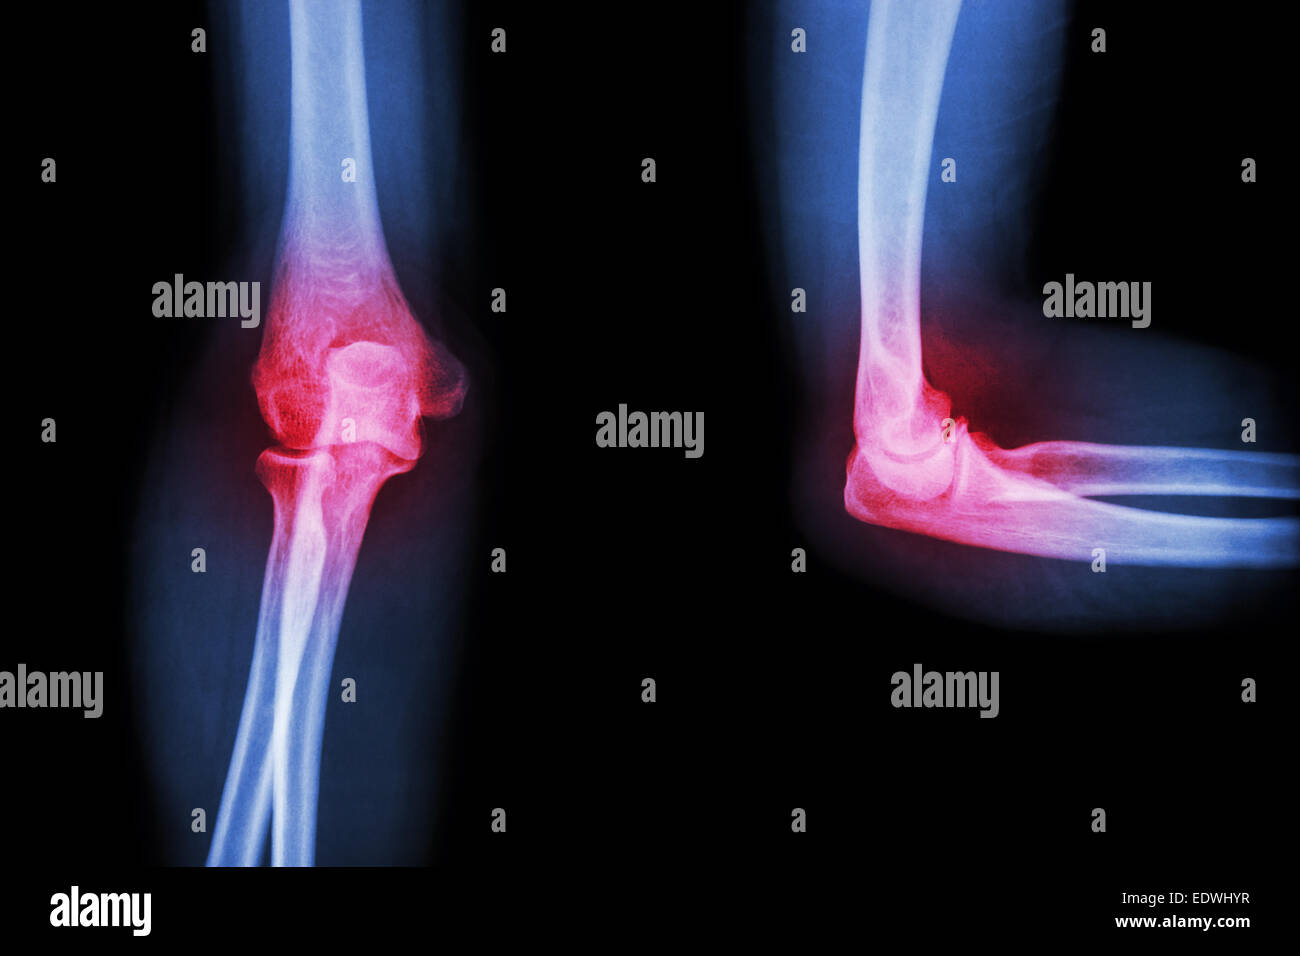 Film X-ray elbow with arthritis (Rheumatoid,Gout) Stock Photo